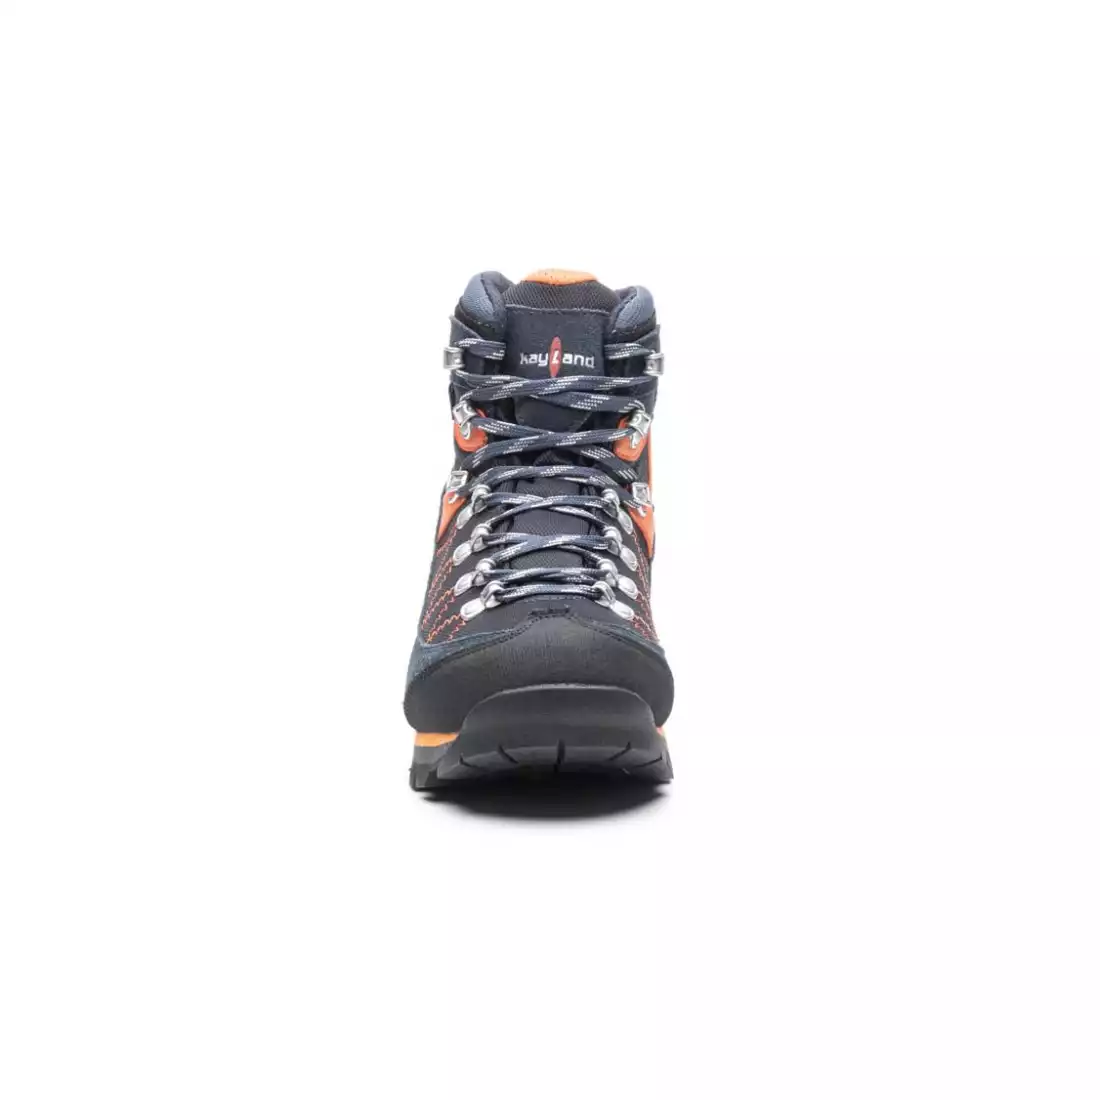 KAYLAND PLUME MICRO GTX Pánske trekingové topánky, GORE-TEX, VIBRAM,  modro-oranžová